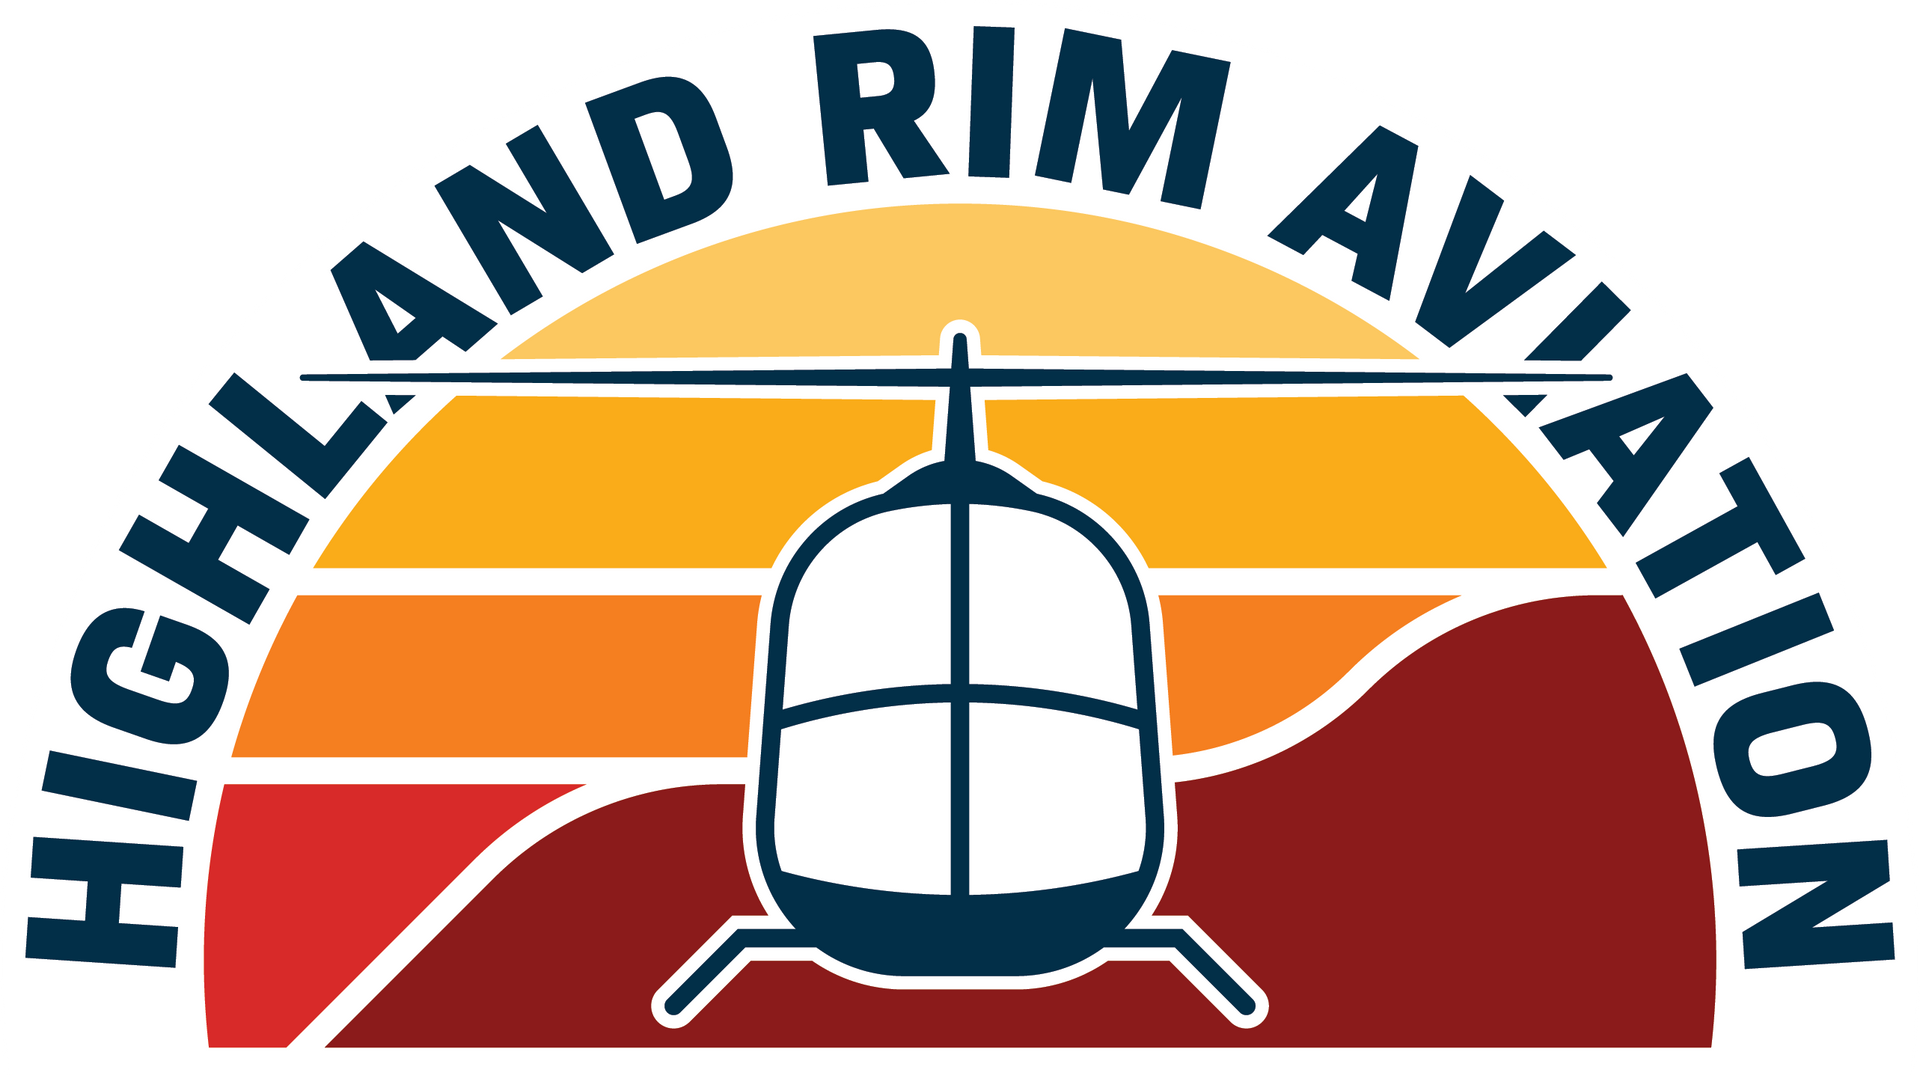 Hightland Rim Aviation in Springfield TN Logo.